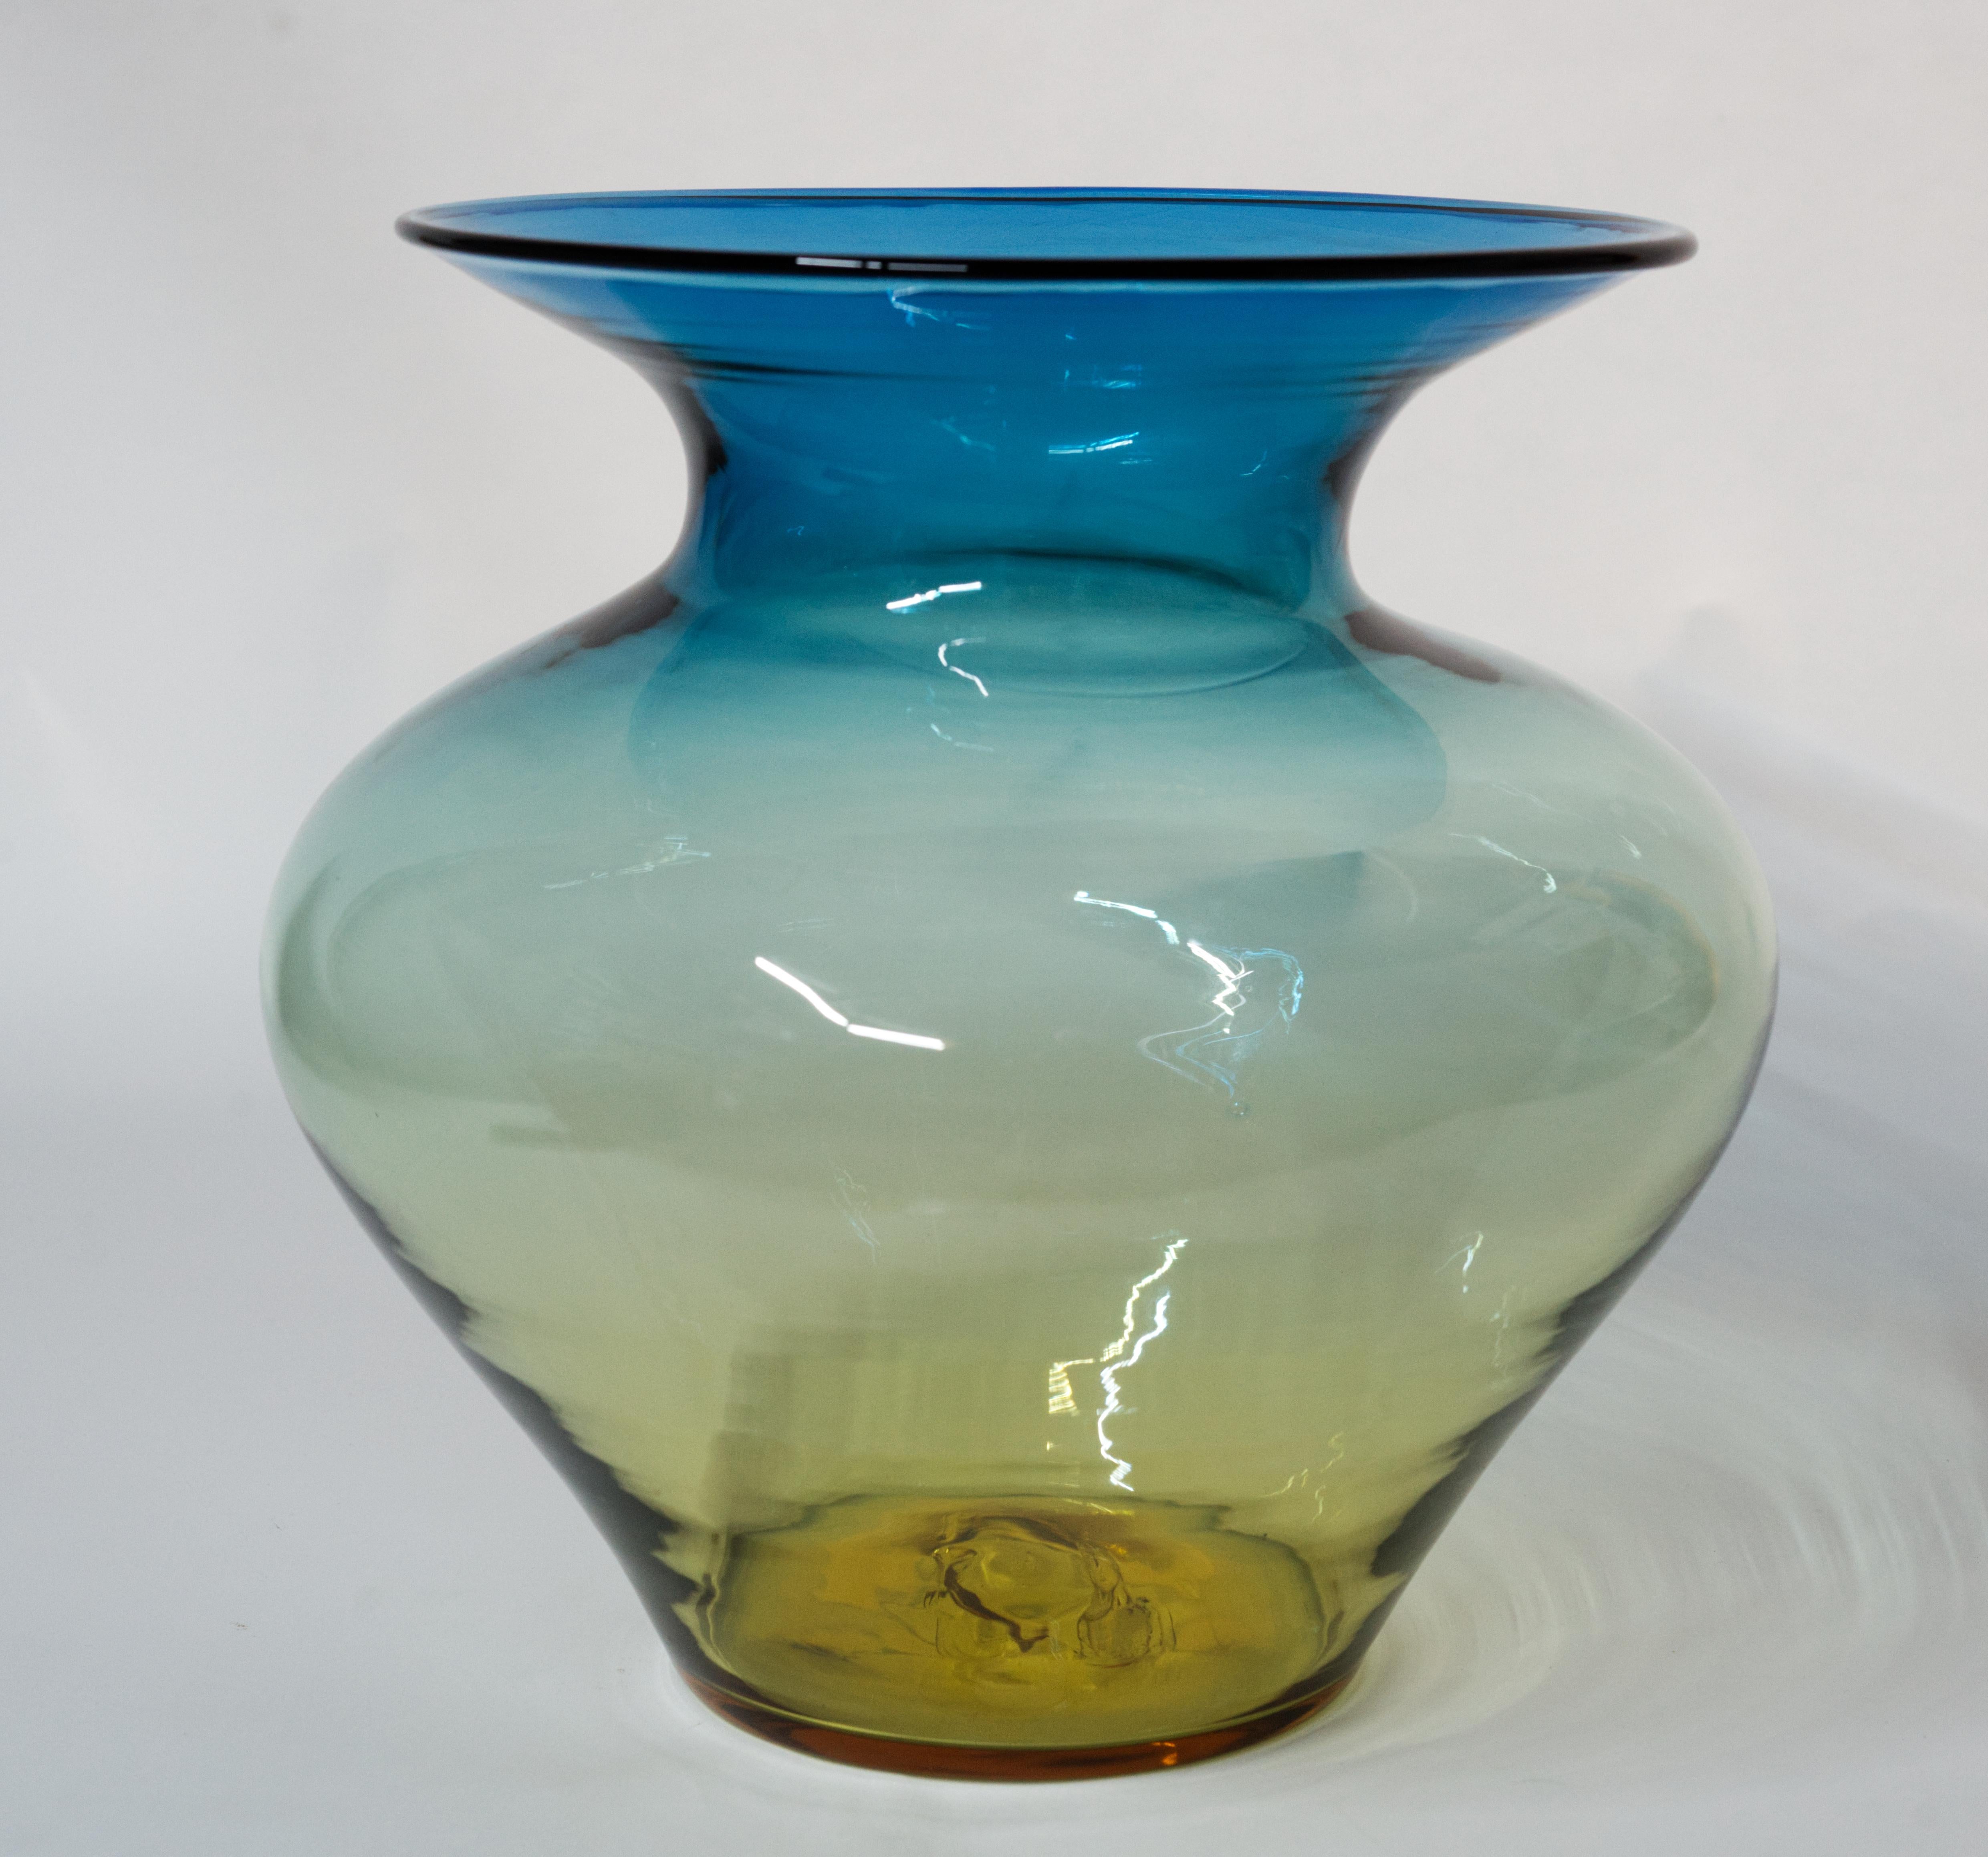  Große Blenko Glas Vase ist mundgeblasen in Desert Green Farbe, mit ombré Farbwechsel von einem tiefen Grün zu bernsteinfarben/gelb.

Die wüstengrüne Farbe entsteht, indem man eine Schale aus blauem Kobaltglas nimmt und sie mit gelbem Topas